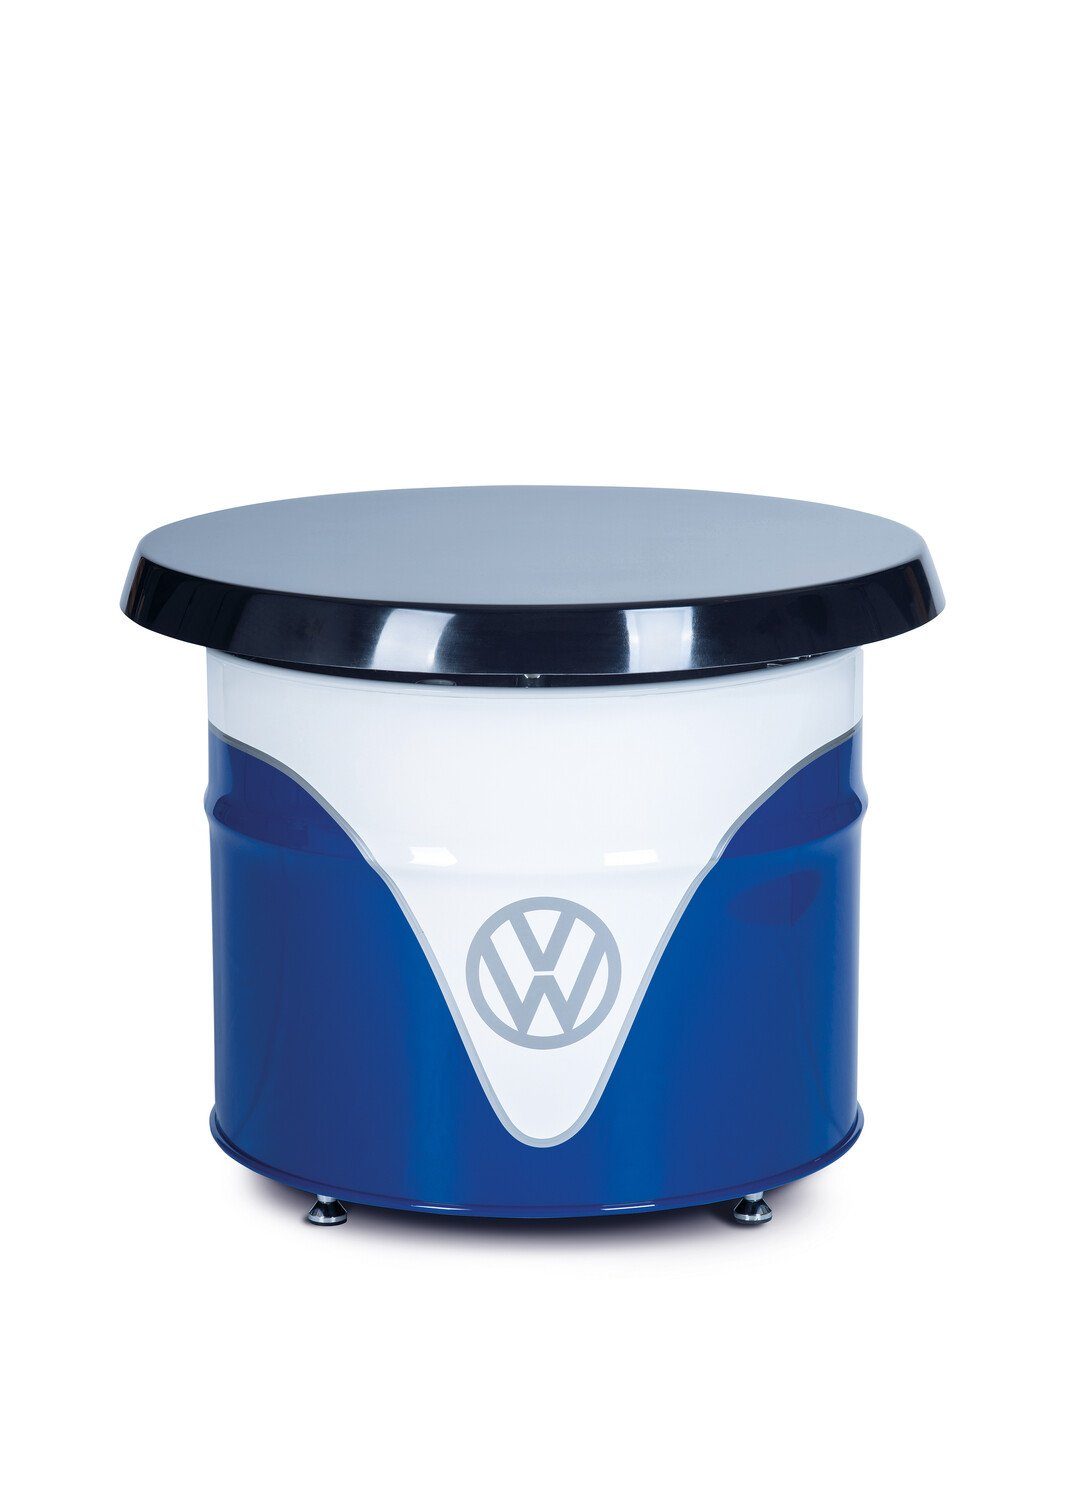 VW Collection & Ölfass Beistelltisch Abstelltisch Hochglanz/ BRISA Blau&Weiß Volkswagen blau weiß by pflegeleichter Partytisch, in